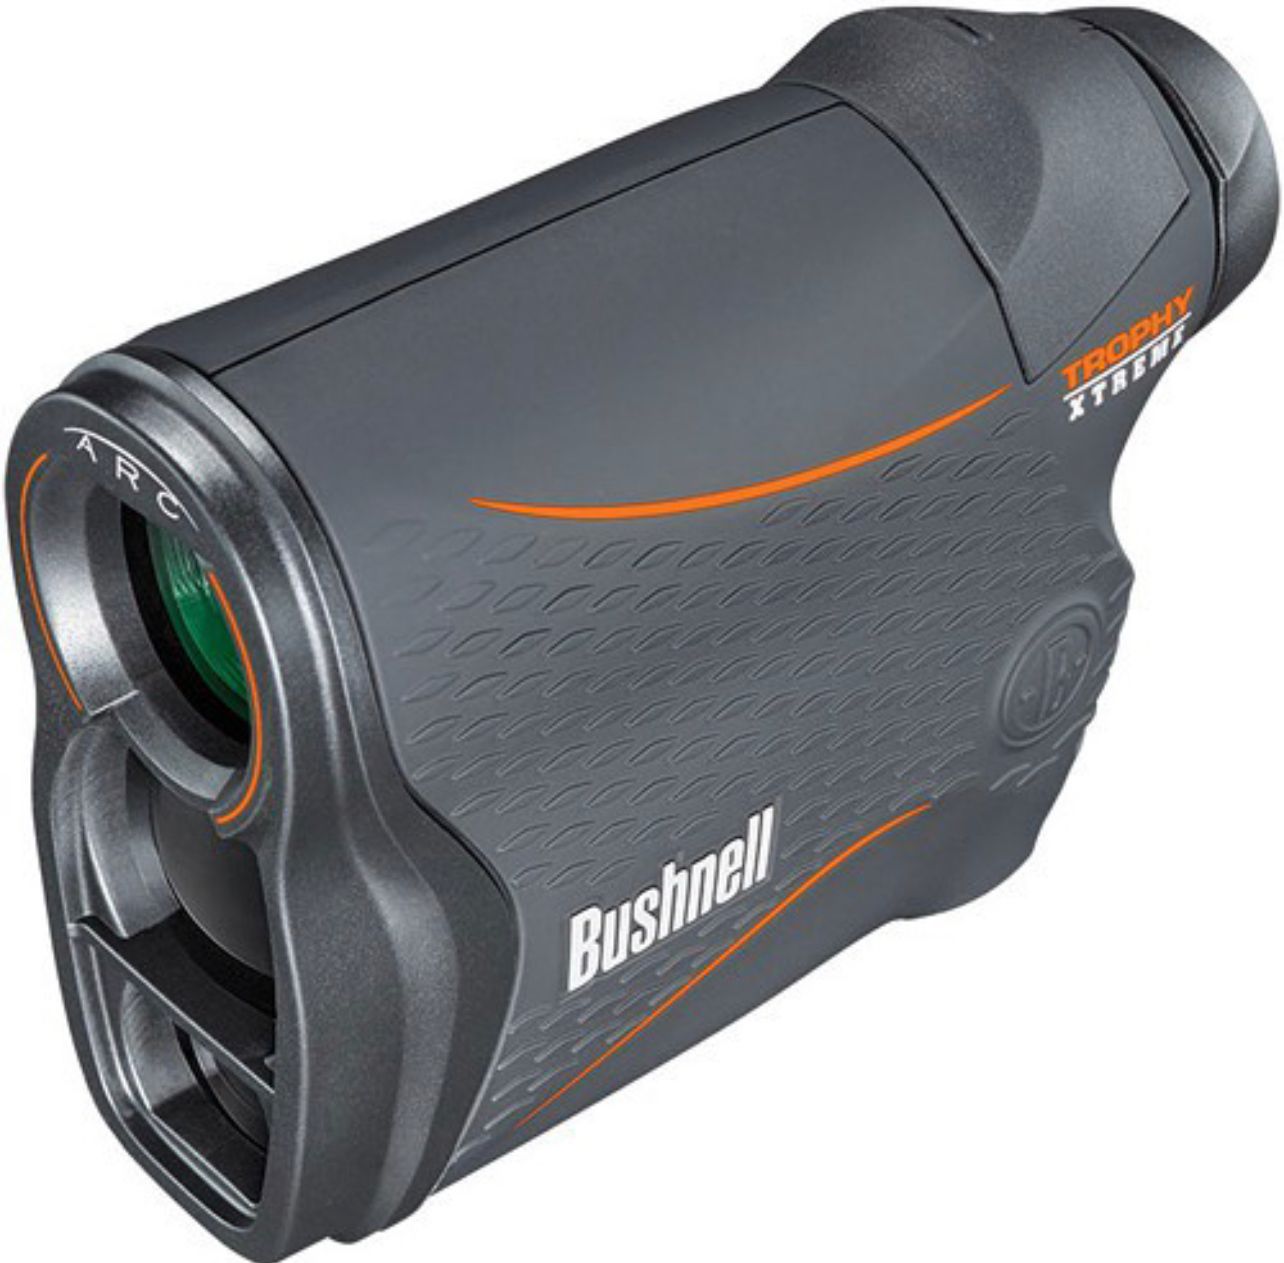 Bushnell Laser Rangefinder Trophy Xtreme 4x20mm (202645) - Limited Lifetime Warranty